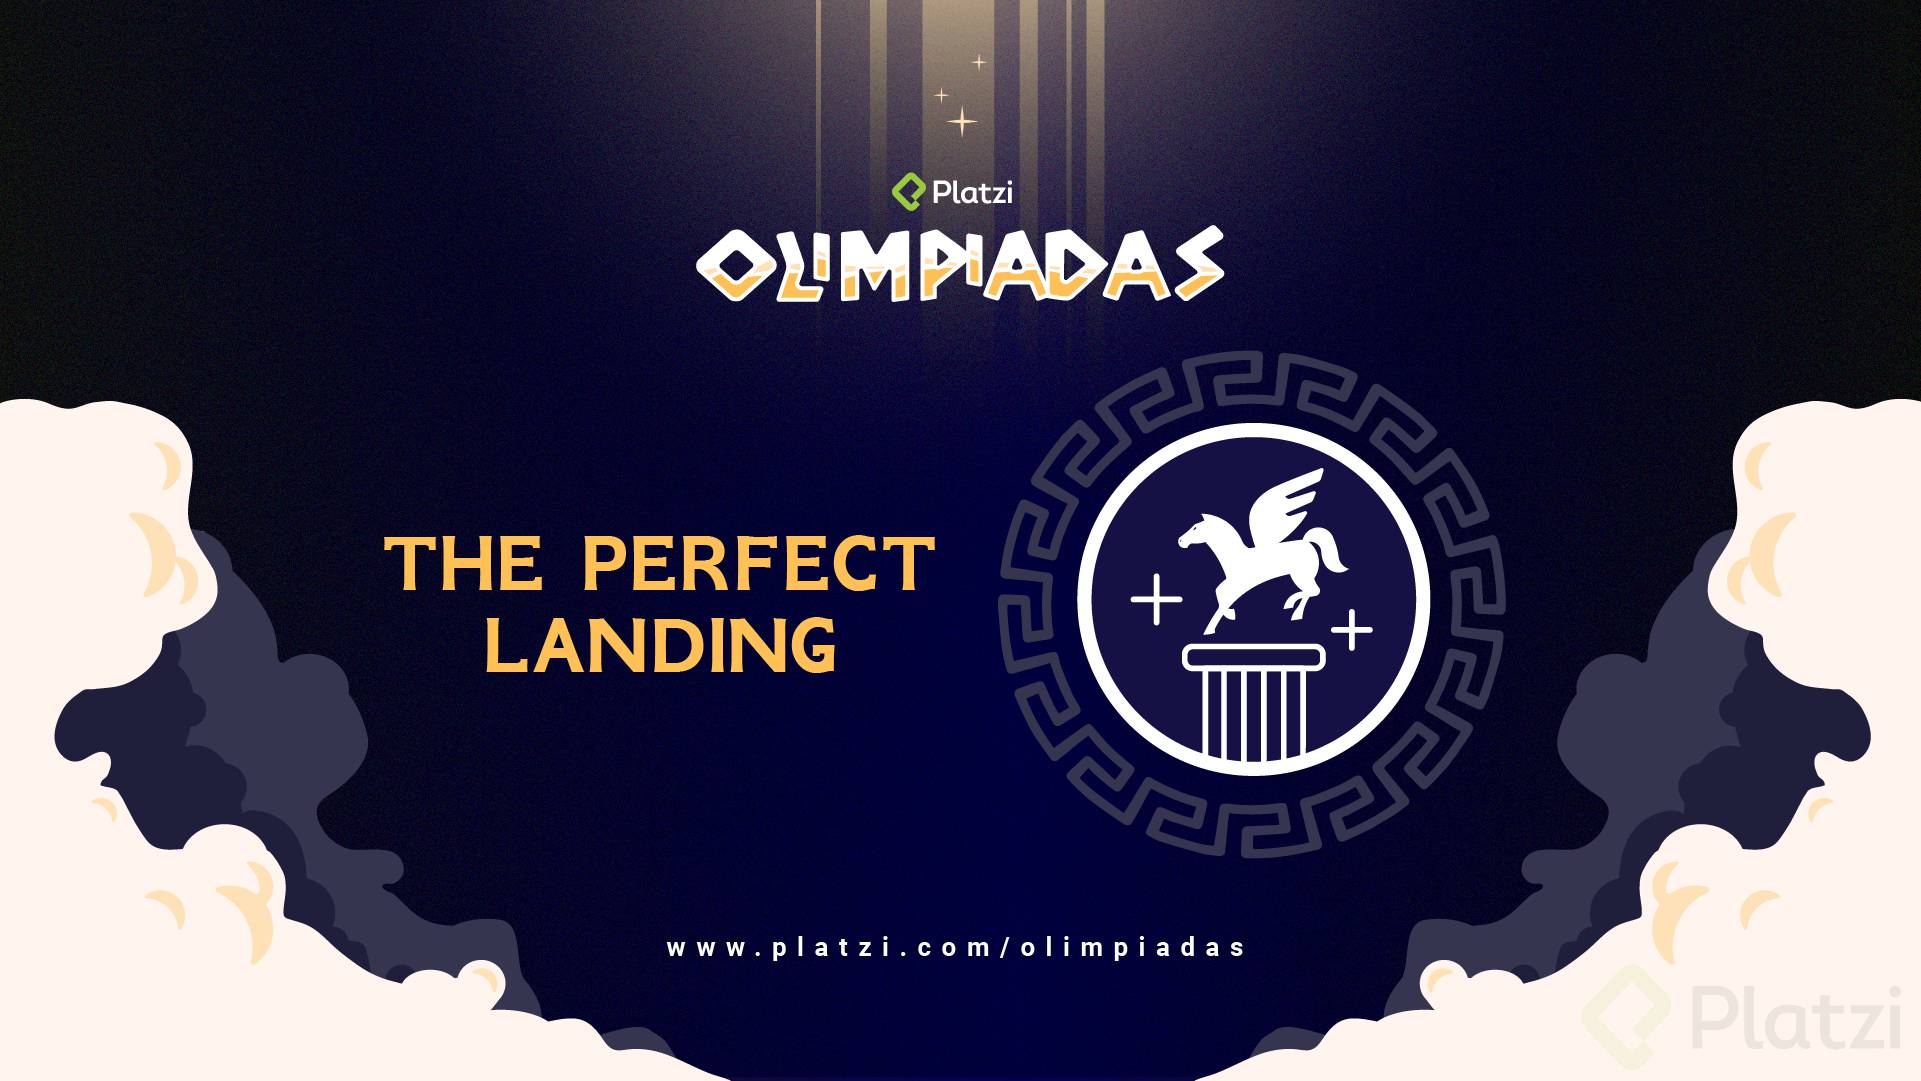 Olimpiadas_Perfect_Landing_Motion_Wallpaper.png